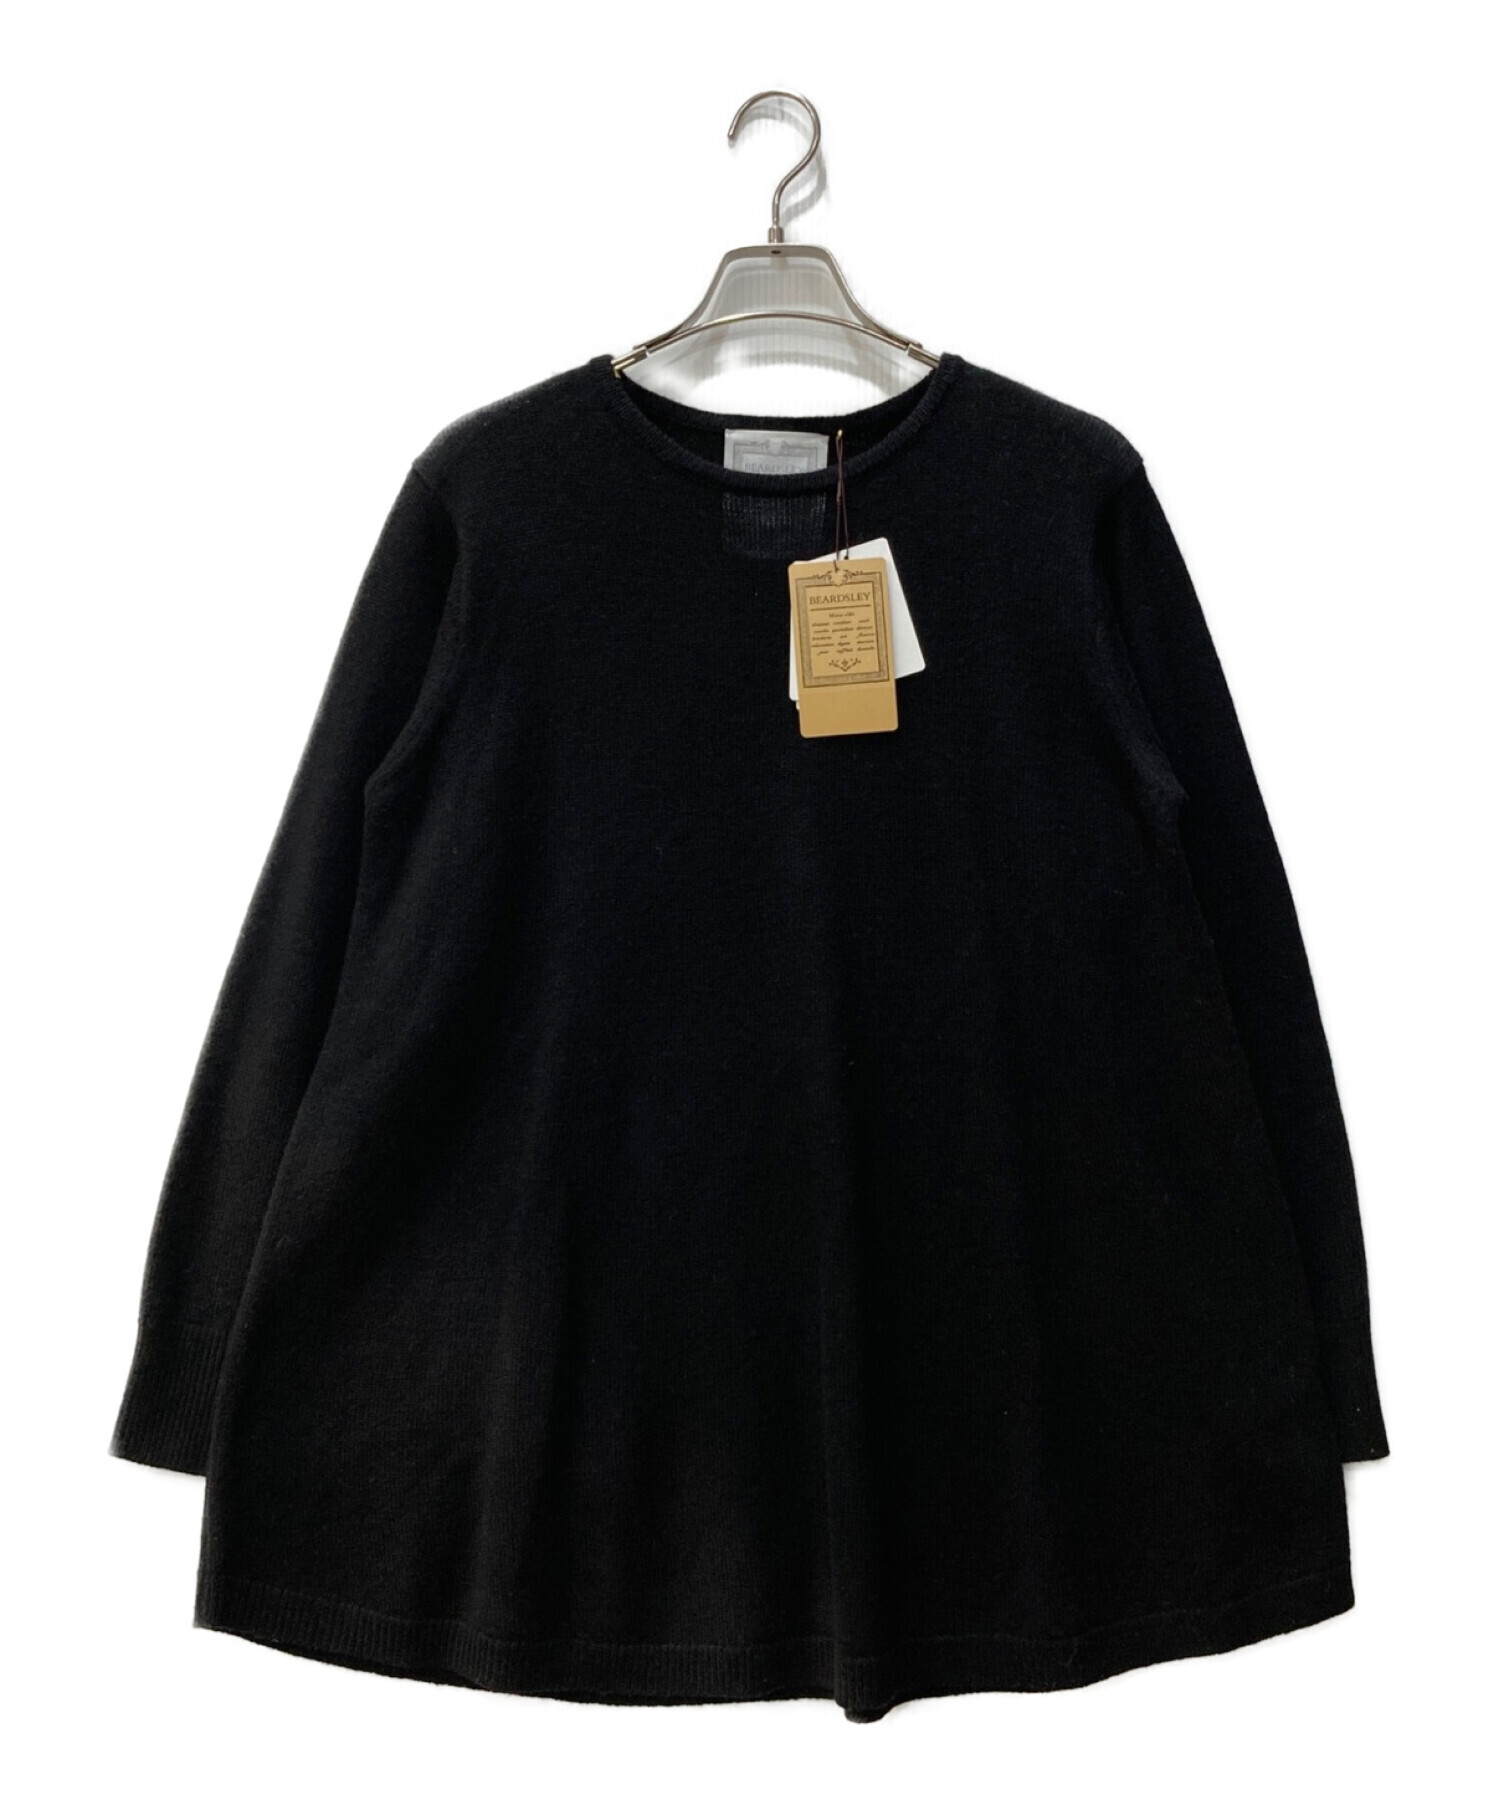 BEARDSLEY (ビアズリー) 裾モール刺繍ニット ブラック サイズ:FREE 未使用品